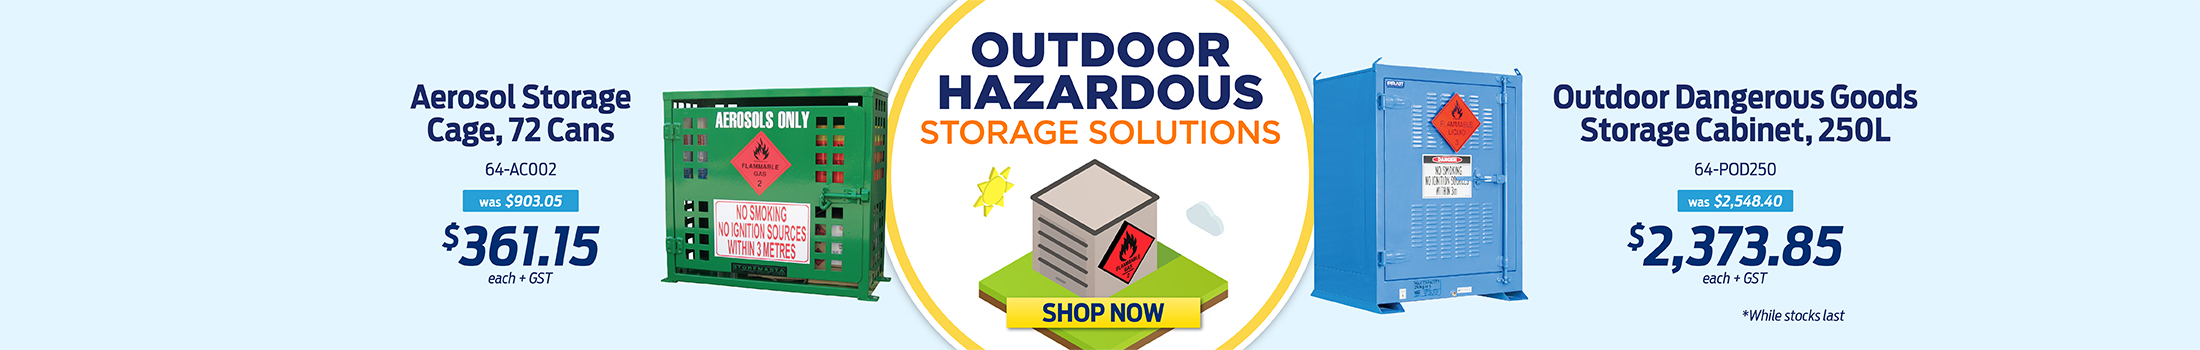 AU Outdoor Hazardous Storage Sale - WEB banner